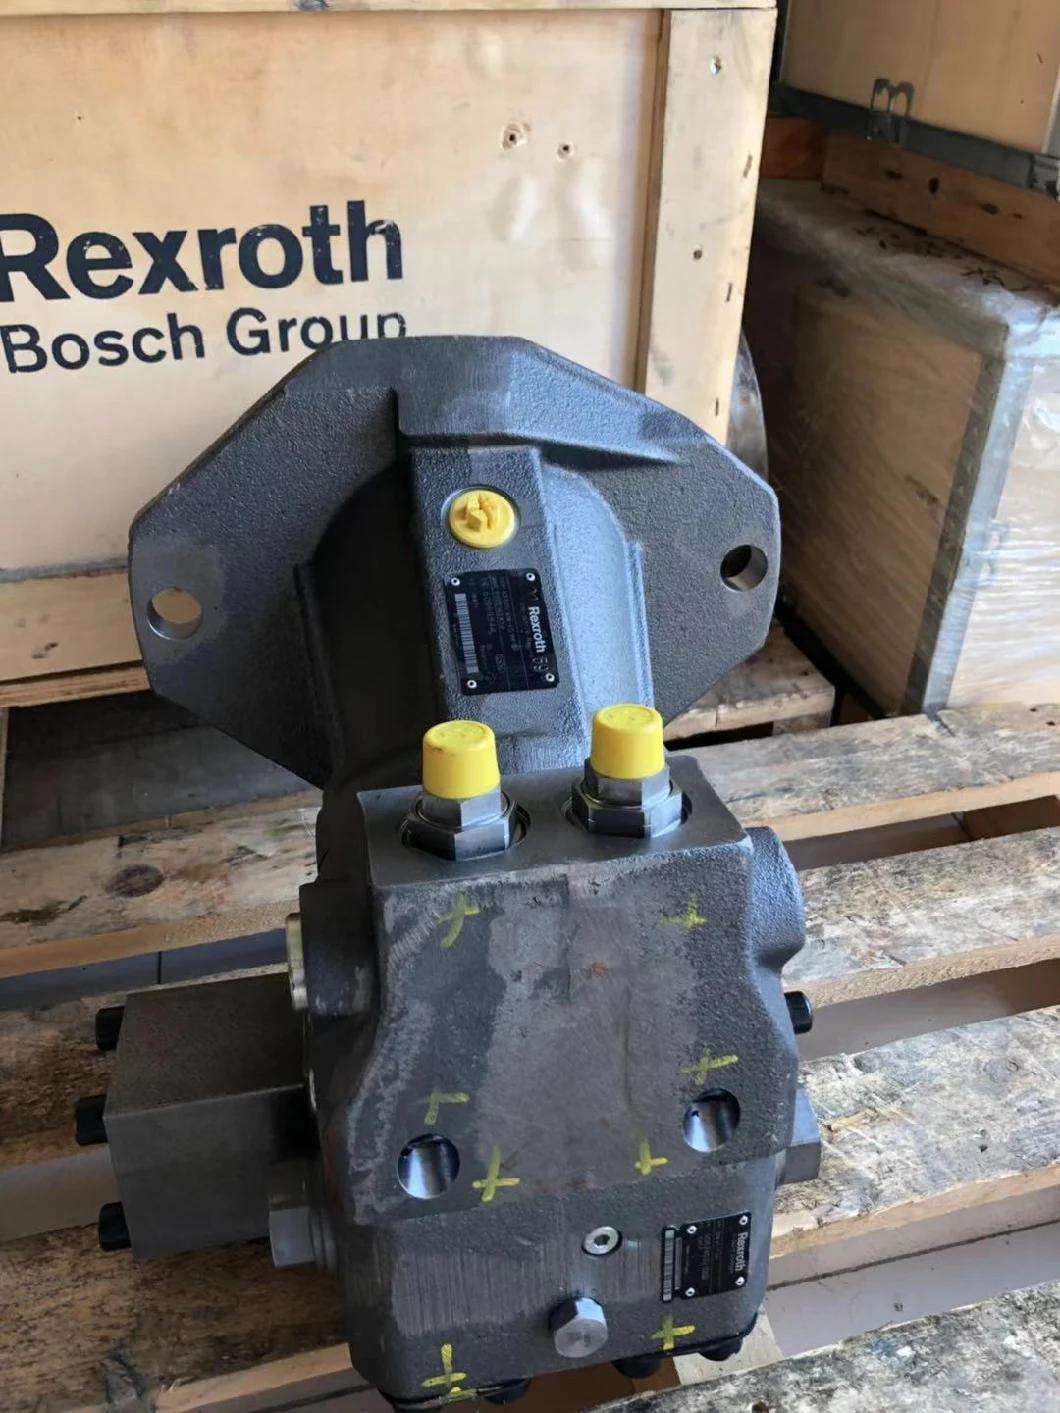 Bosch Rexroth Gft 80 T3 2348 R916577983 Gearbox